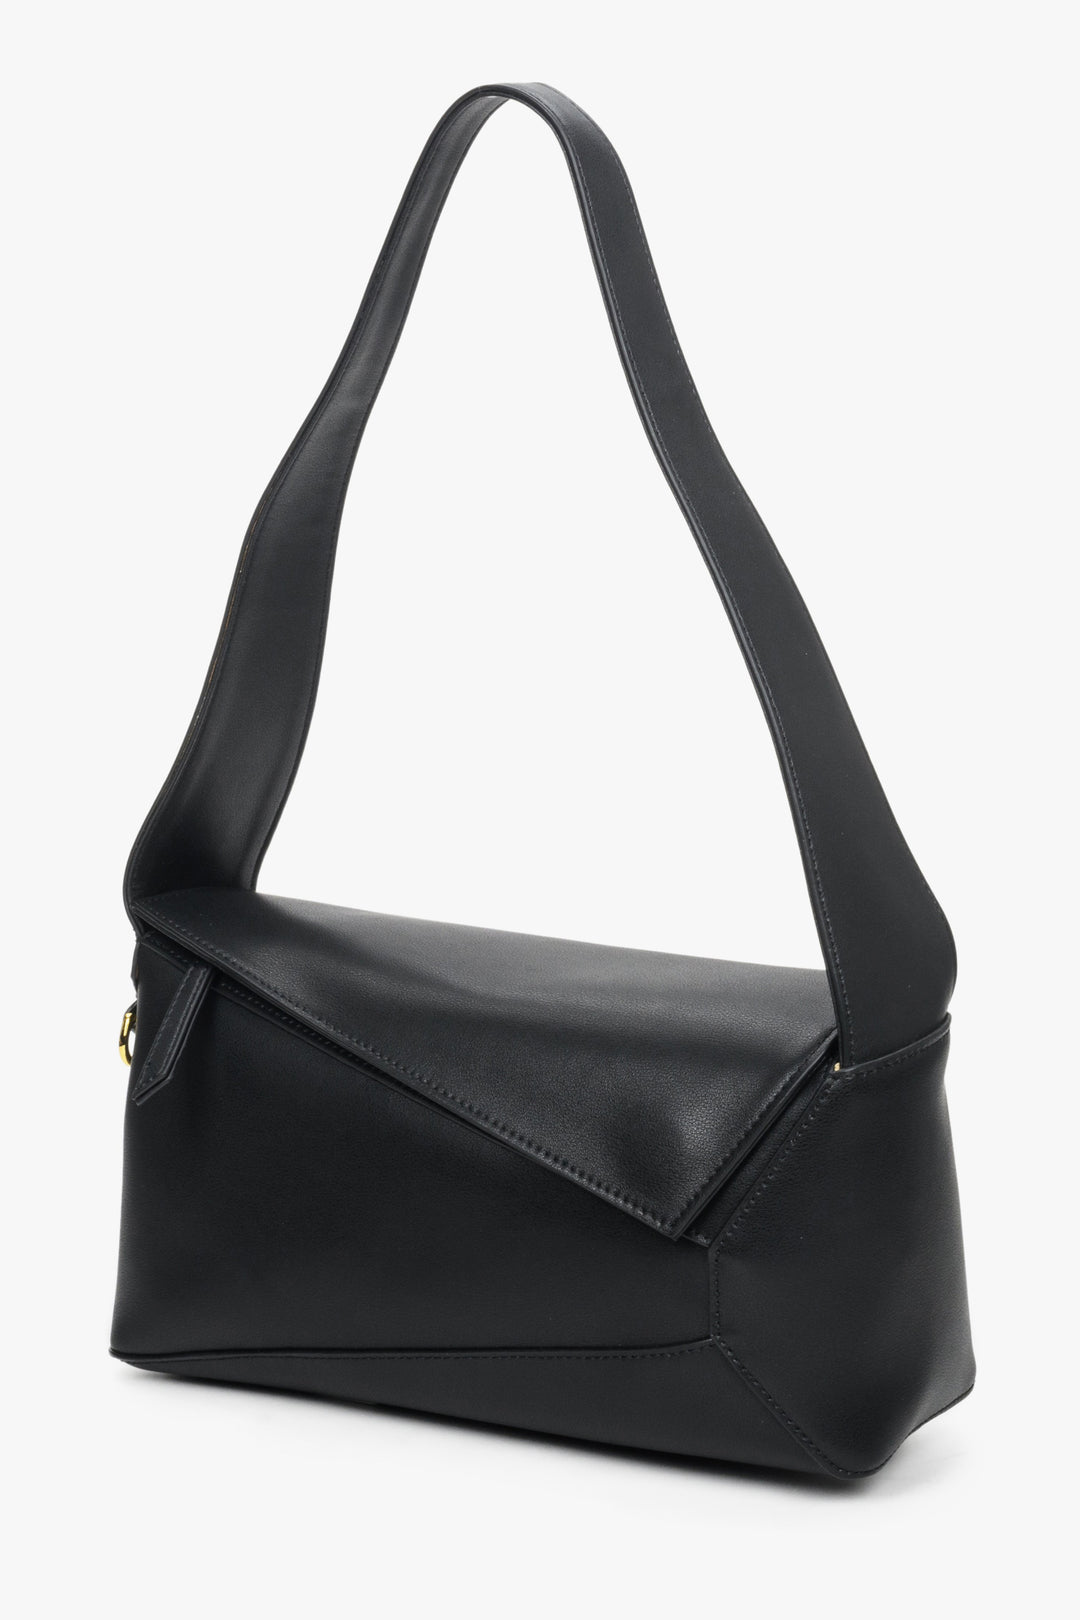 Women's Small Black Handbag made of Genuine Leather Estro ER00112469.